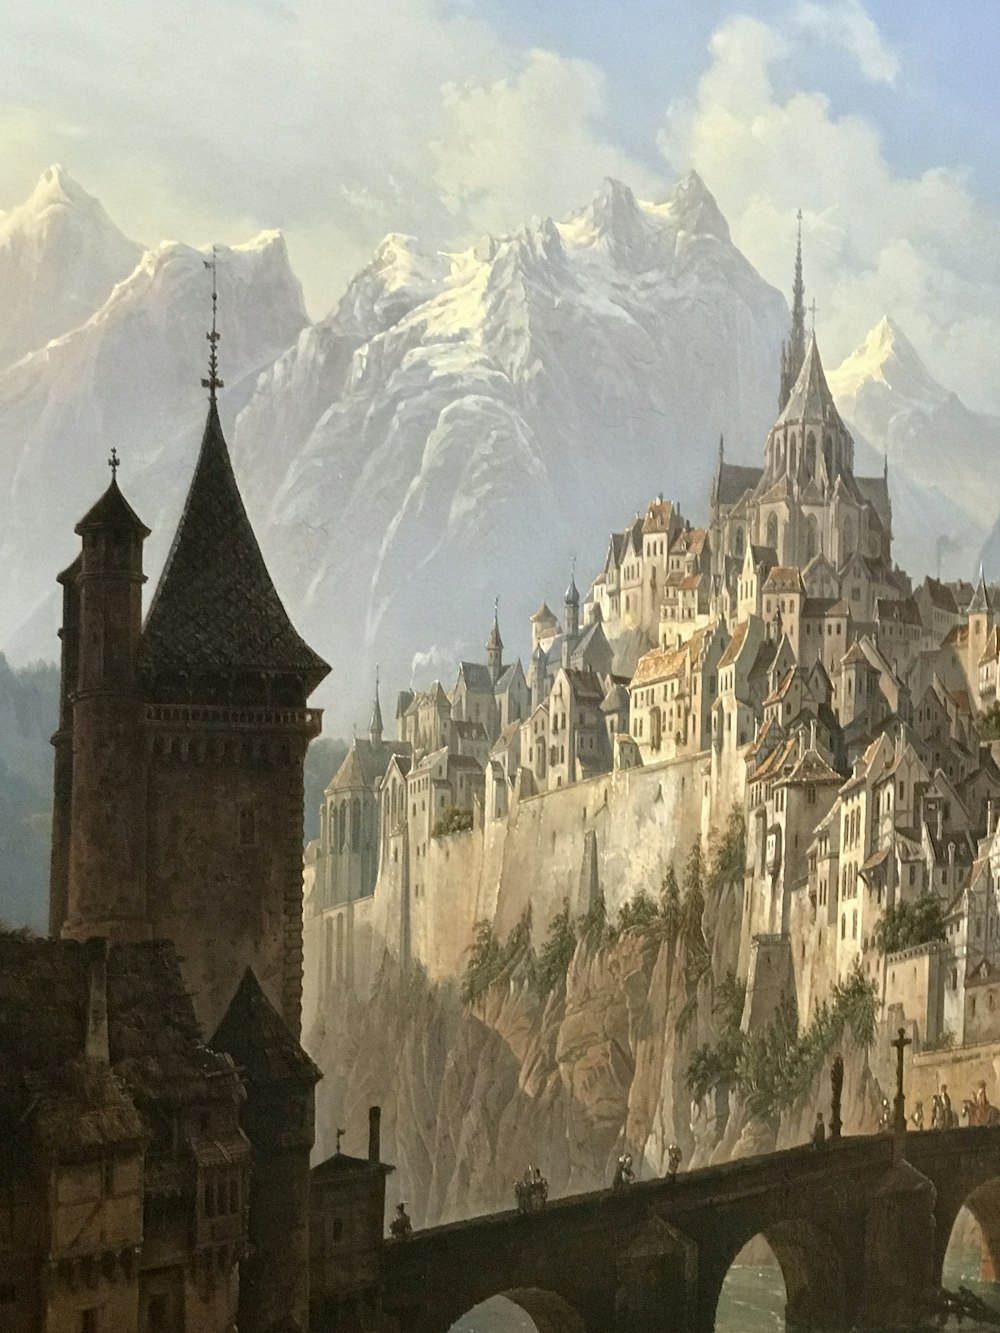 Braunes und graues Schloss in der Nähe des Berges